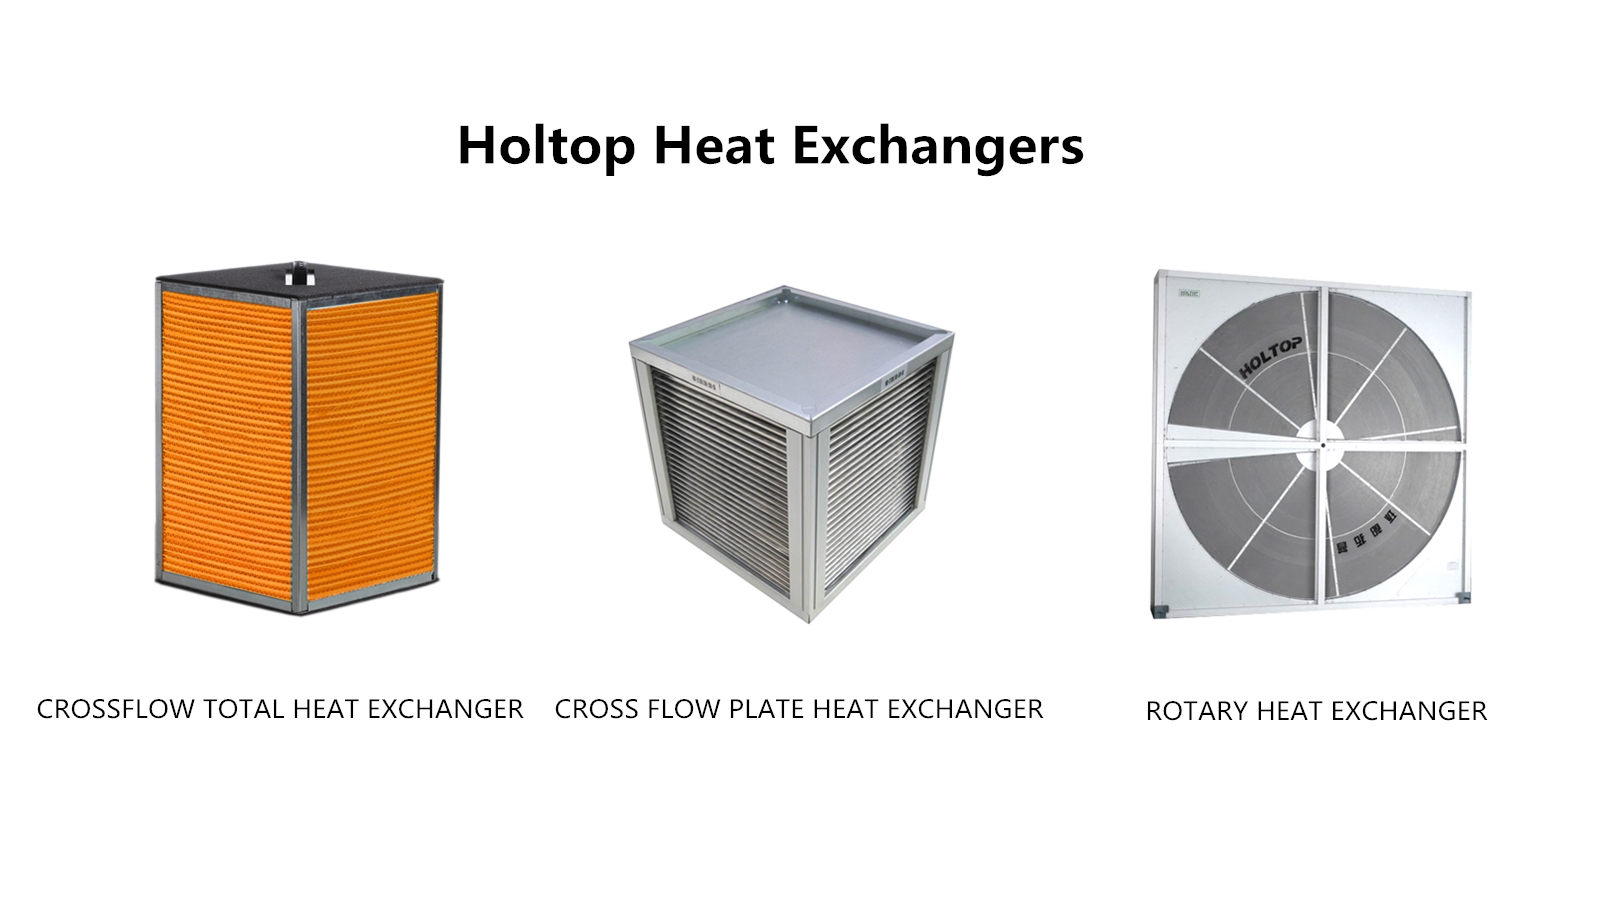 heat-exchangers